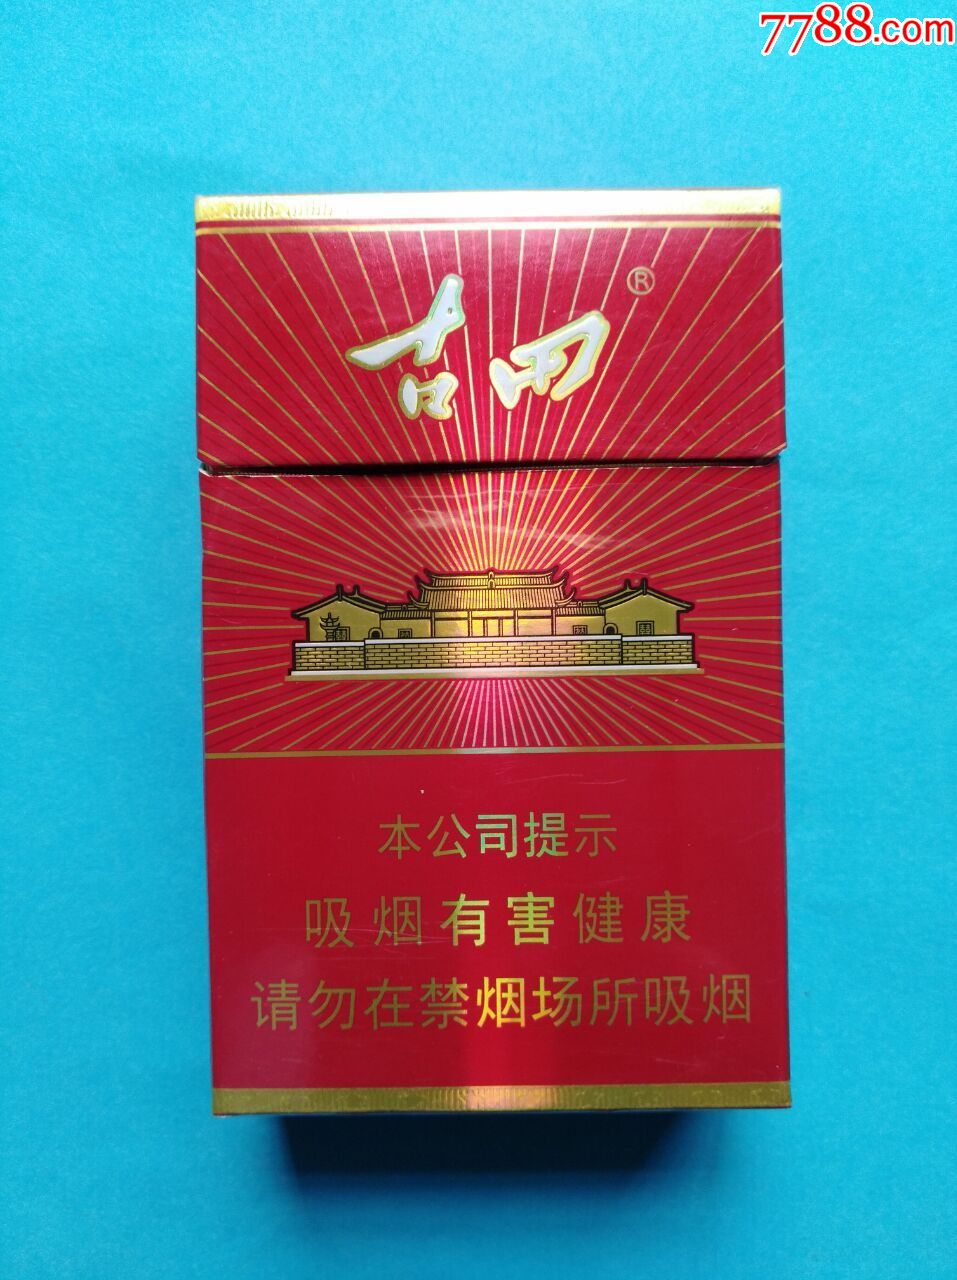 古田(光芒),烟标/烟盒